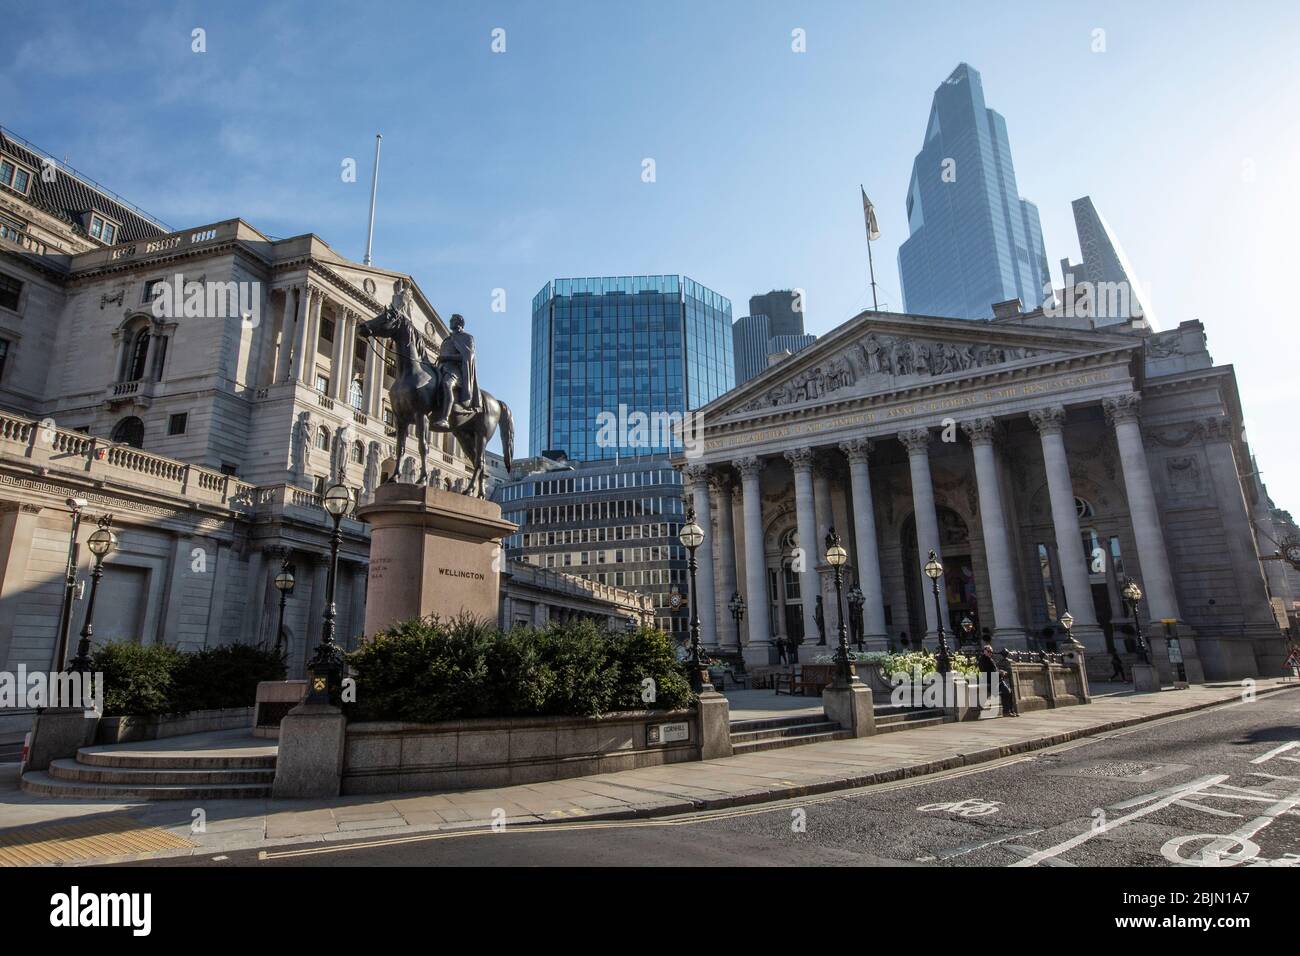 Une banque d'Angleterre et Royal Exchange complètement abandonnée tôt ce matin au coeur de la ville de Londres pendant le verrouillage du coronavirus, Royaume-Uni Banque D'Images